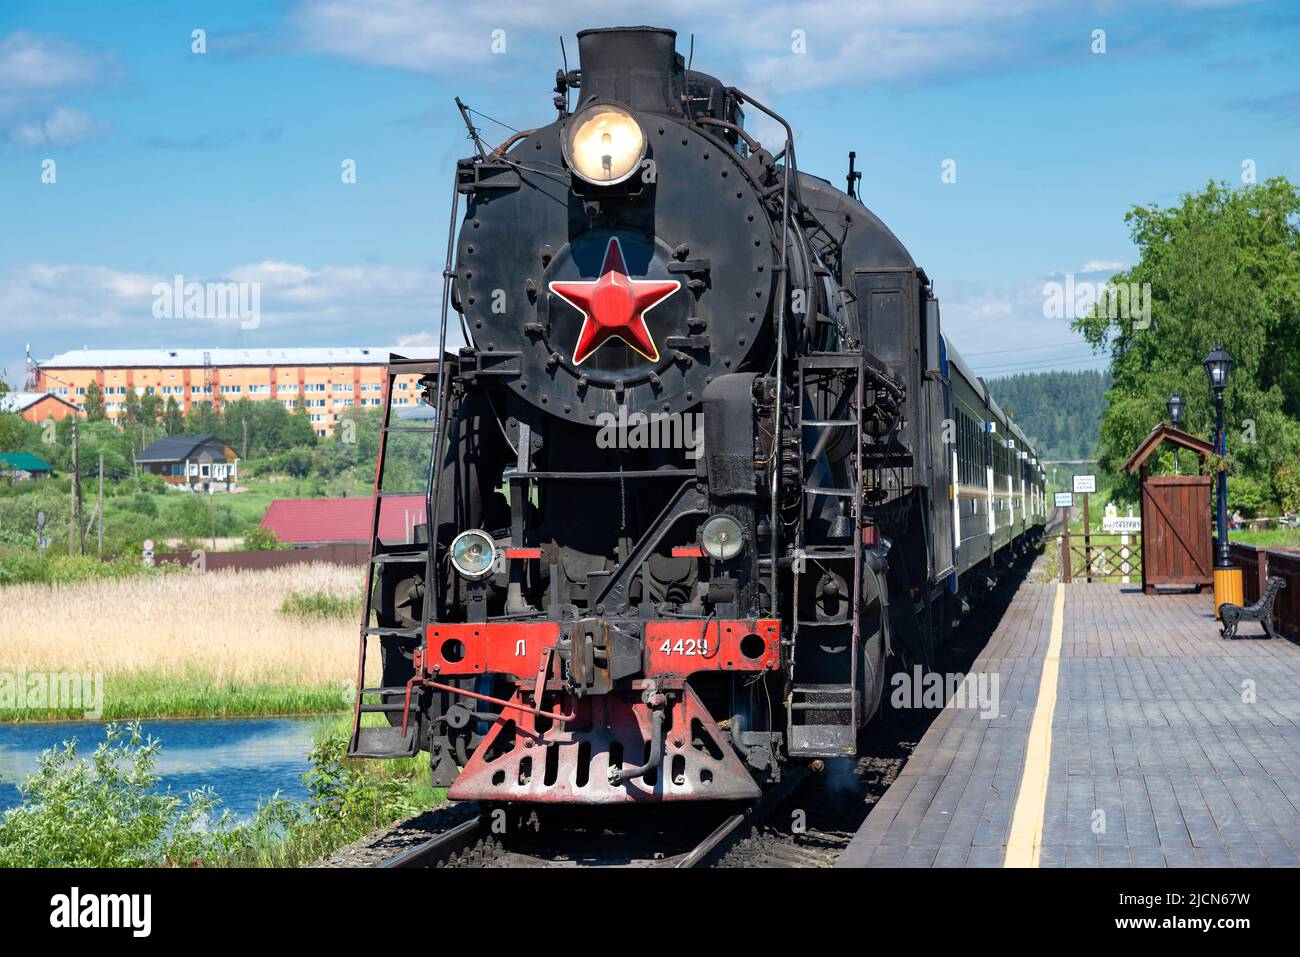 KARELIA, RUSSLAND - 11. JUNI 2022: Eine alte Dampflokomotive L-4429 mit einem Retro-Touristenzug 'Ruskealsky Express' am Bahnsteig des Bahnhofs. Karelien Stockfoto